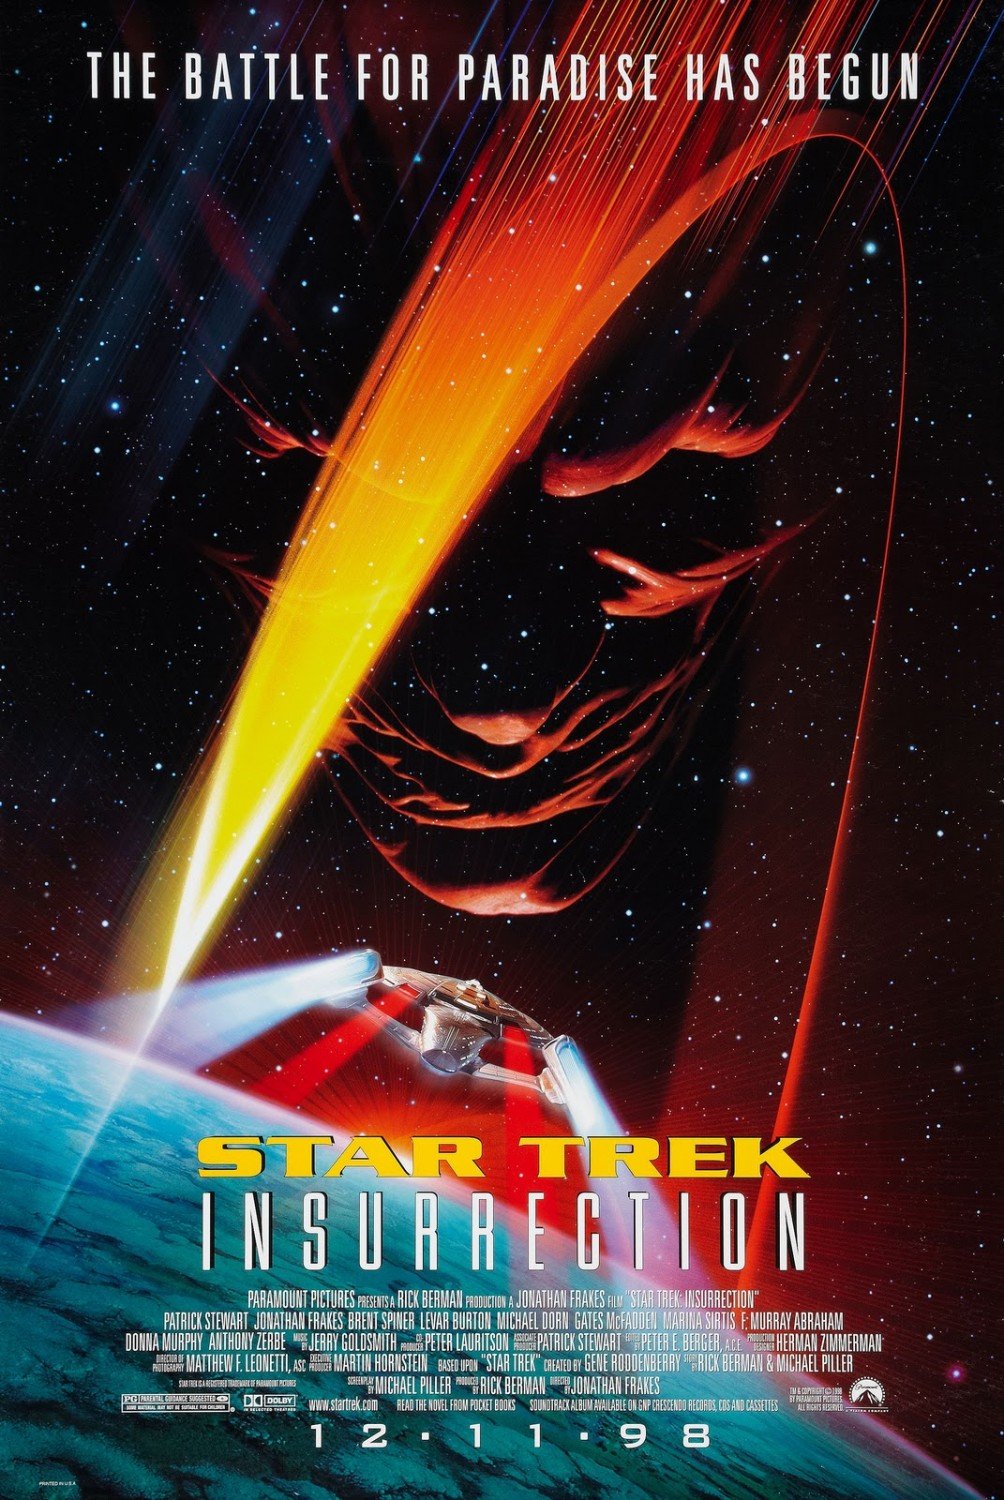 Poster of the movie Star Trek: Insurrection